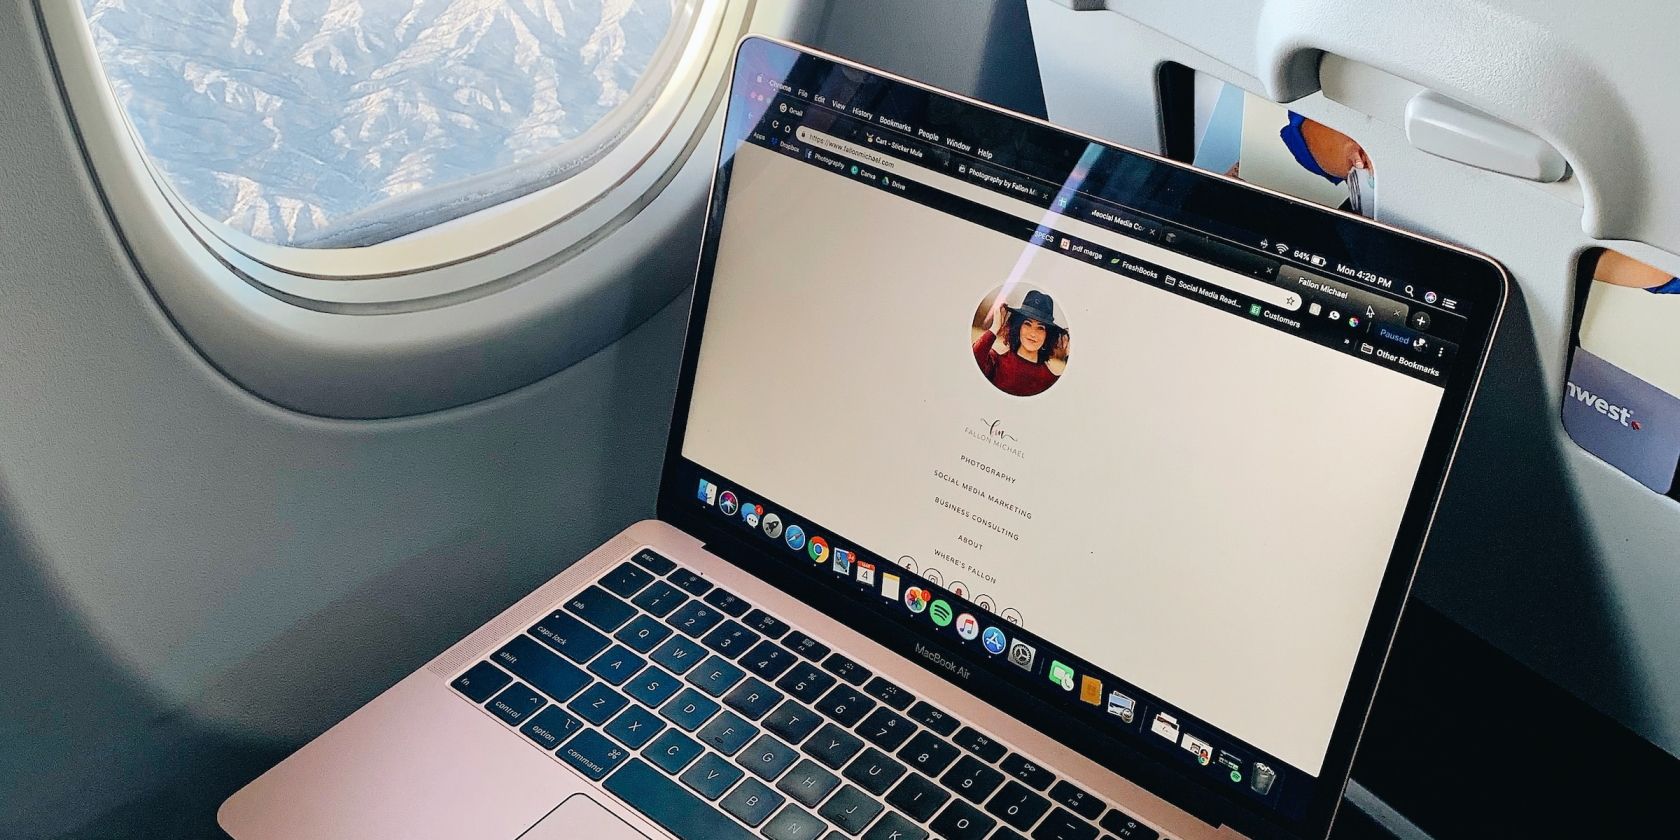 MacBook in a plane